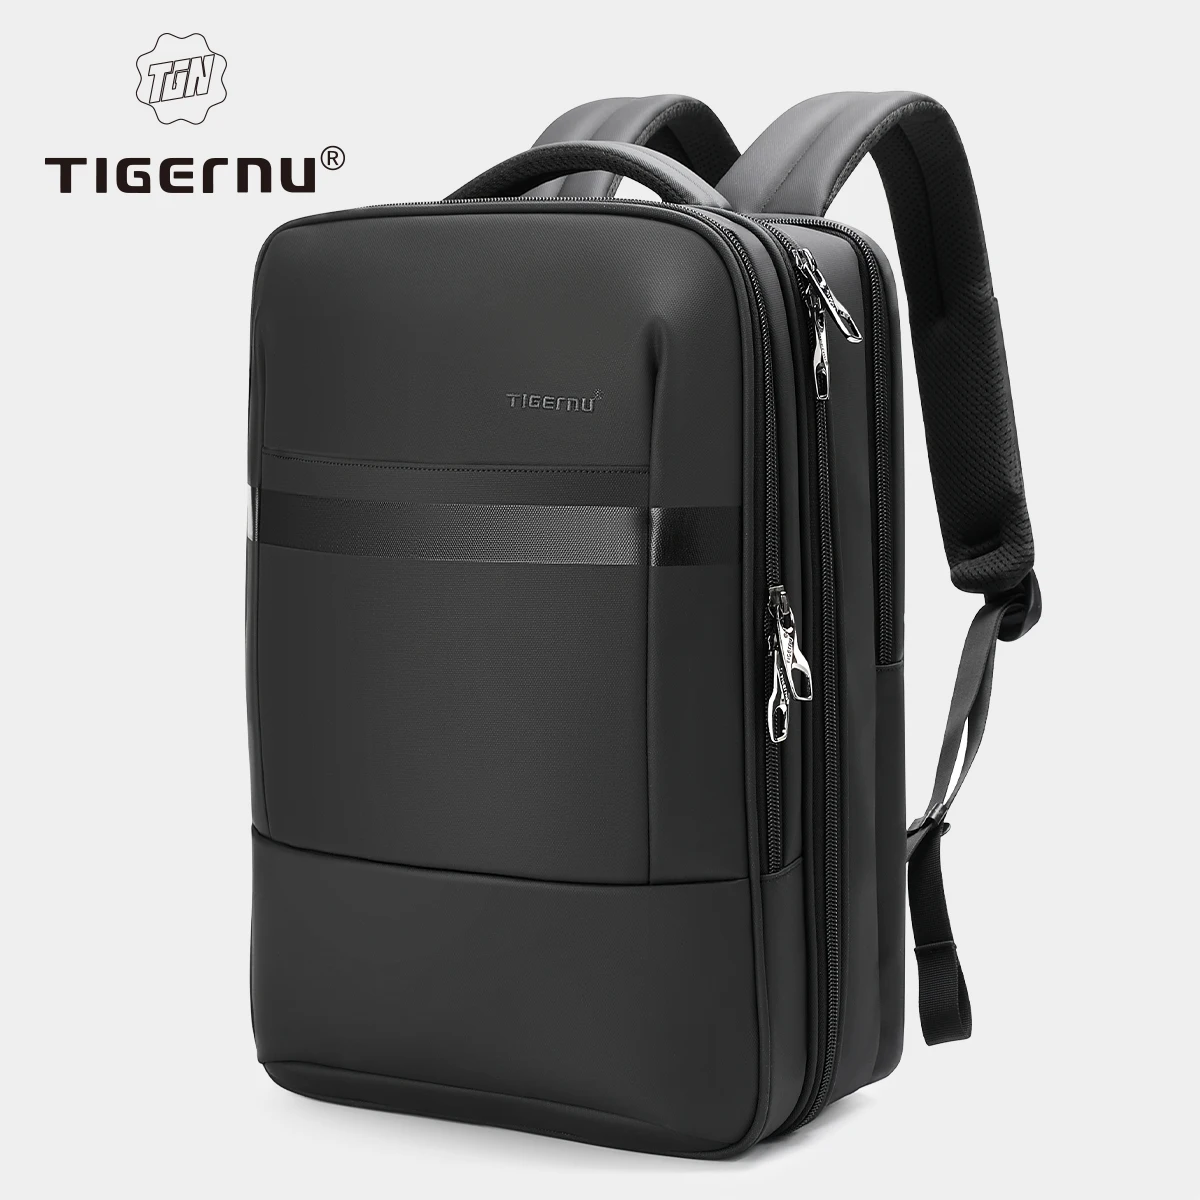 Tigernu AntiTheft Waterproof Sports Travel Satchel Shoulder Bag Backpack EU 